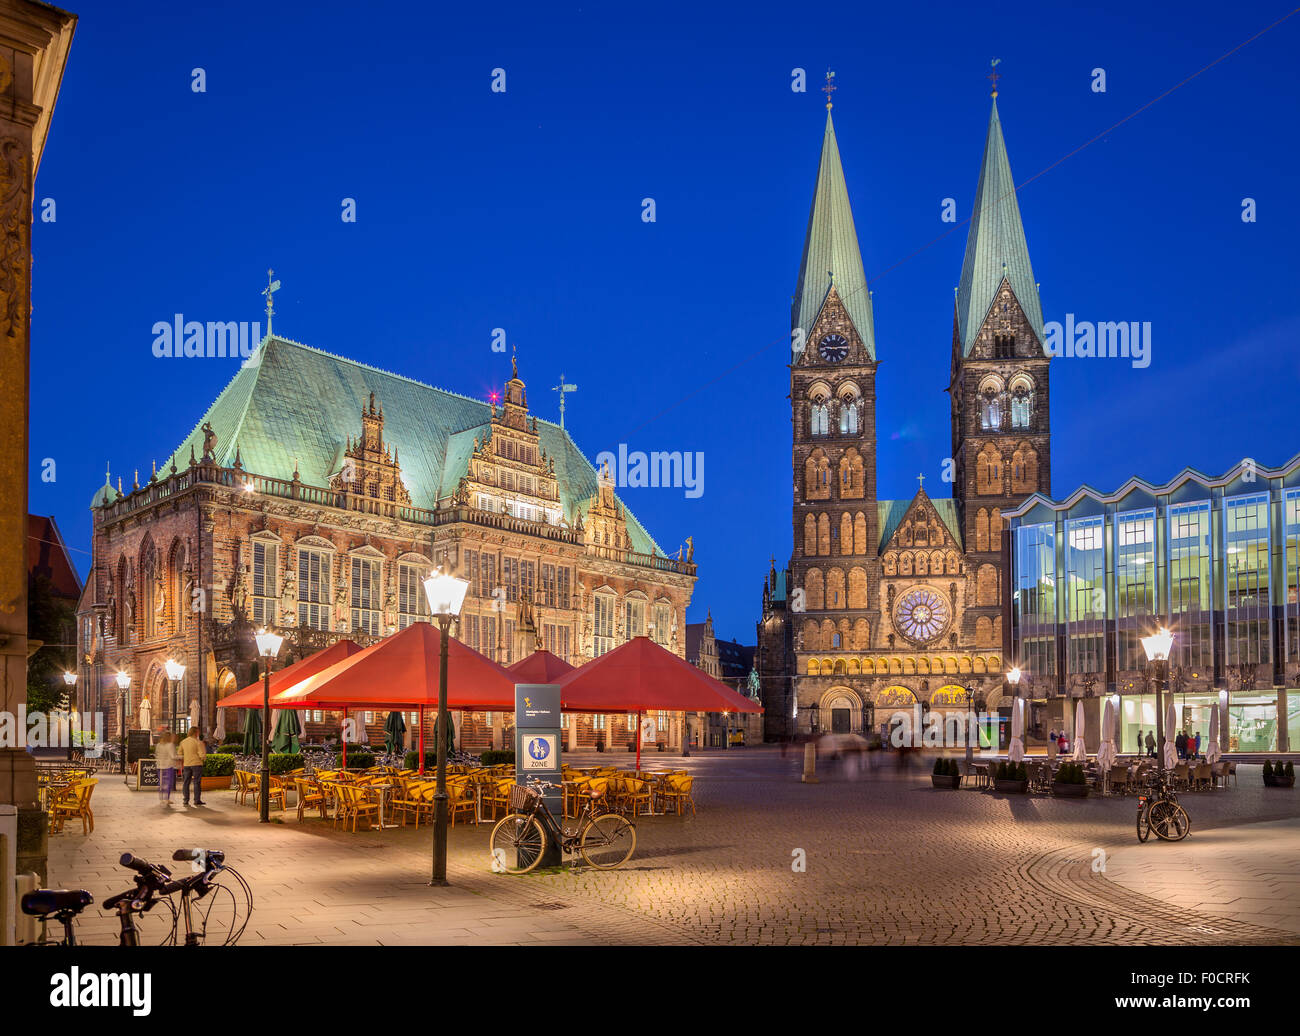 Brema Market Square si trova nel centro della città anseatica di Brema, Germania ed è una delle più antiche piazze pubbliche . Foto Stock